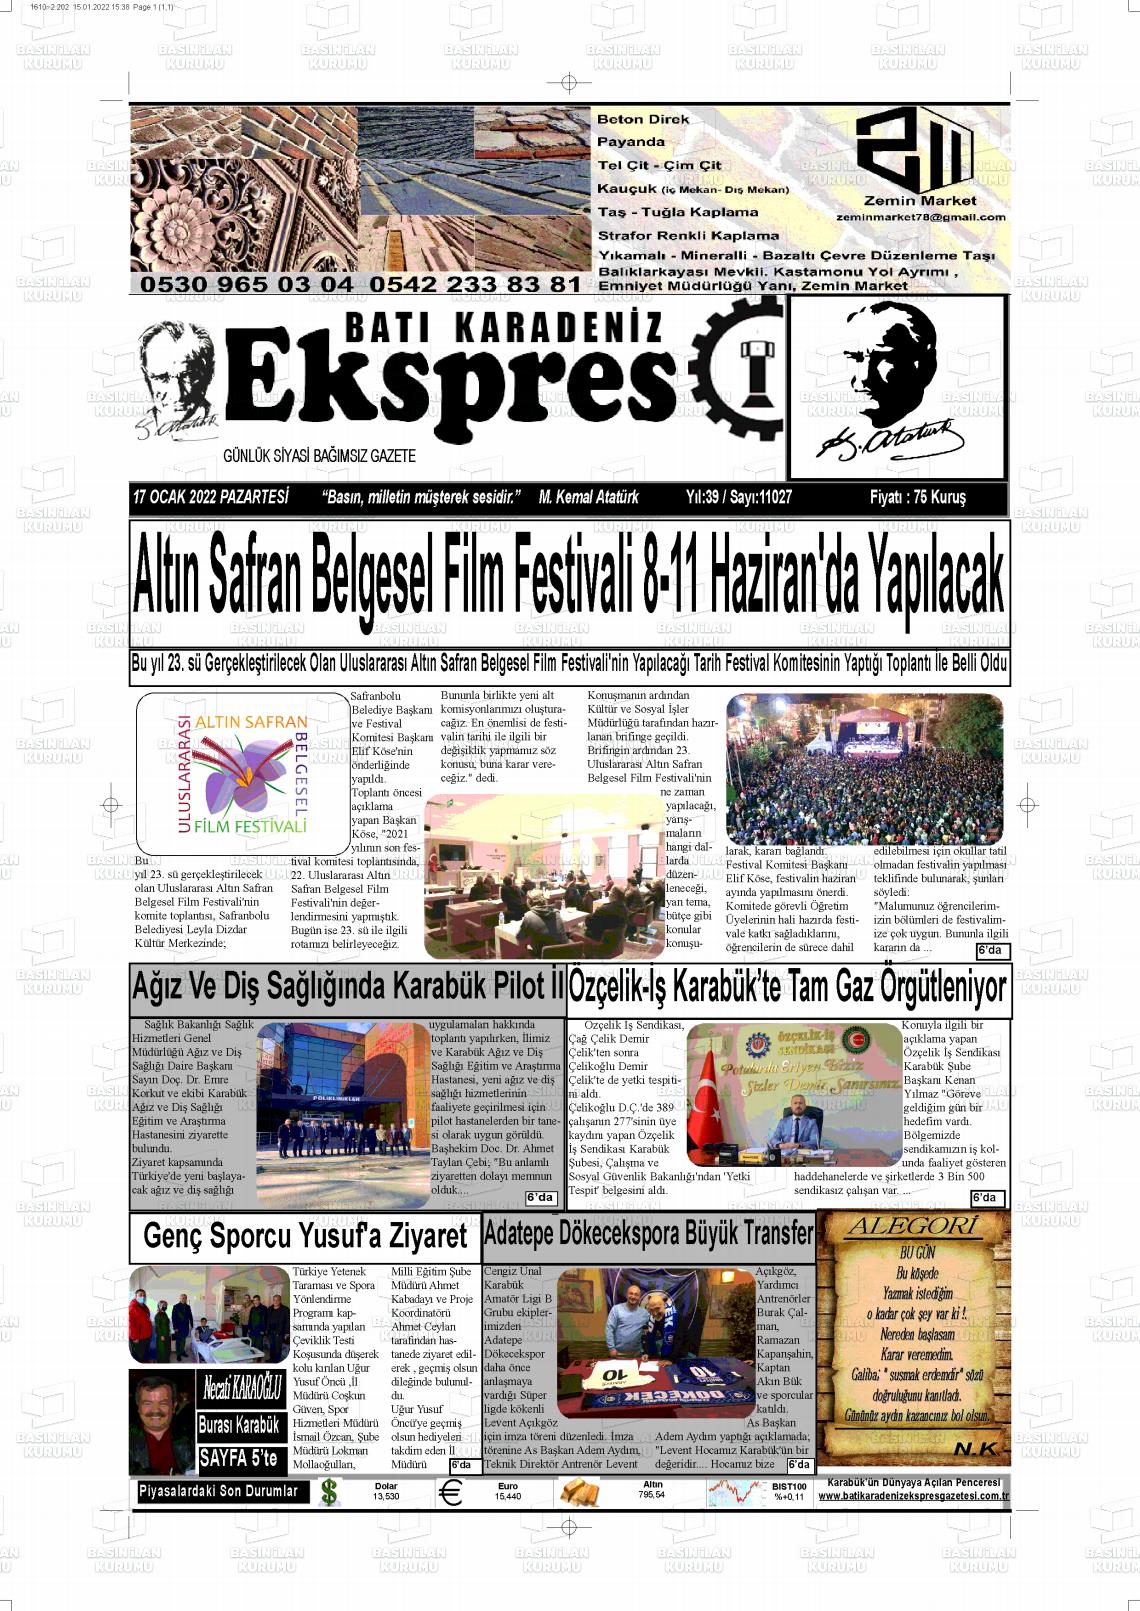 17 Ocak 2022 Batı Karadeniz Ekspres Gazete Manşeti